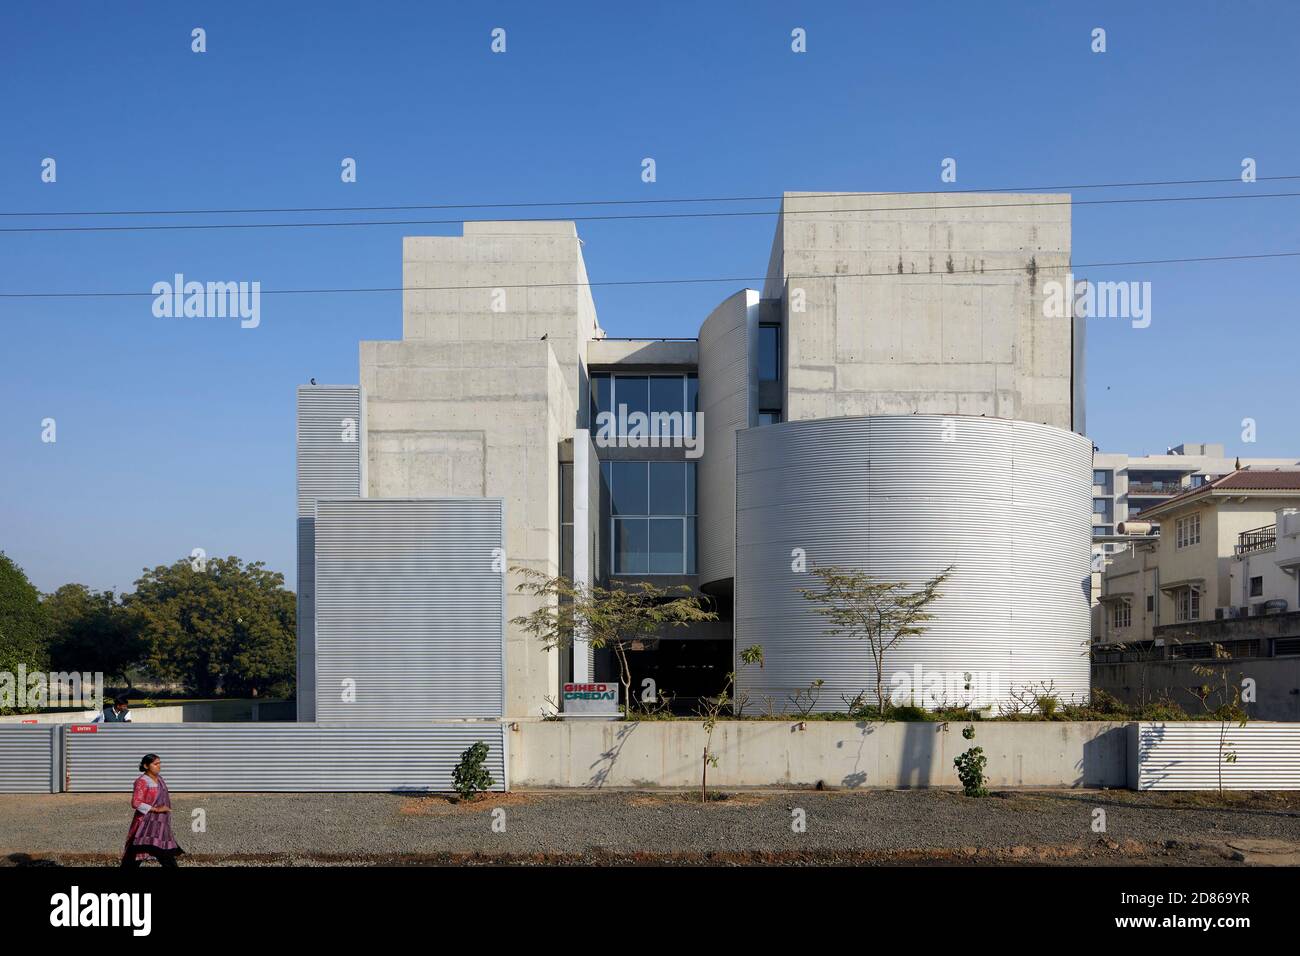 Vue extérieure globale avec murs en mouvement. Gihed Credai, Ahmedabad, Inde. Architecte: Matharoo Associates, 2020. Banque D'Images